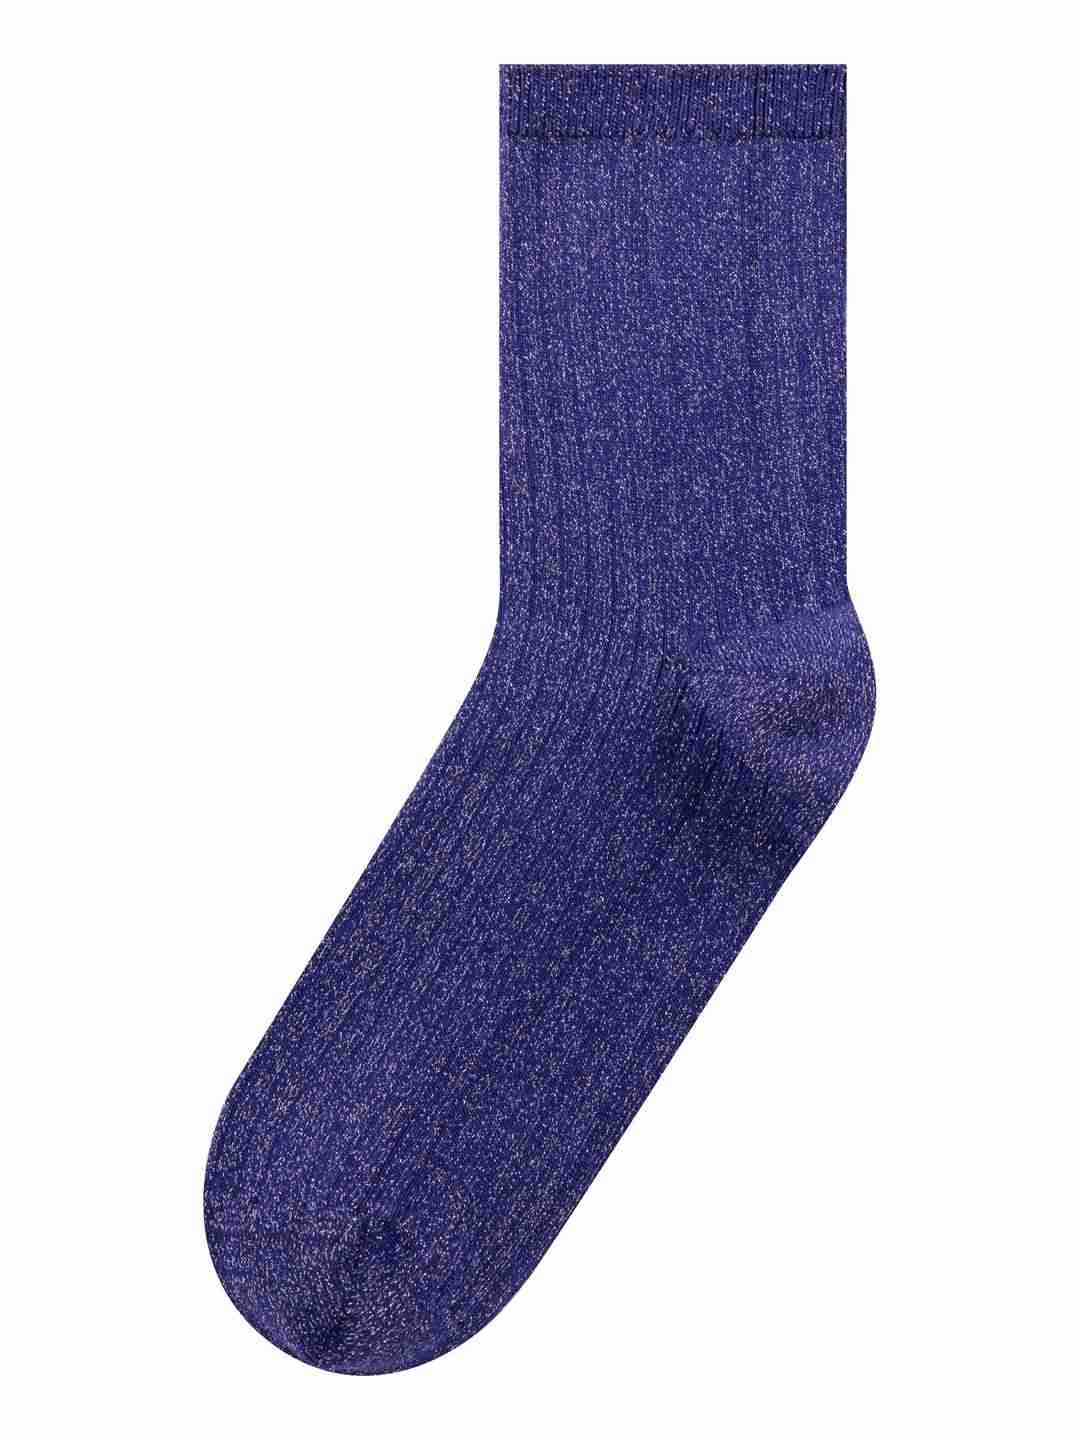 Socken Rip Single Pack Lurex deep purple von KnowledgeCotton Apparel